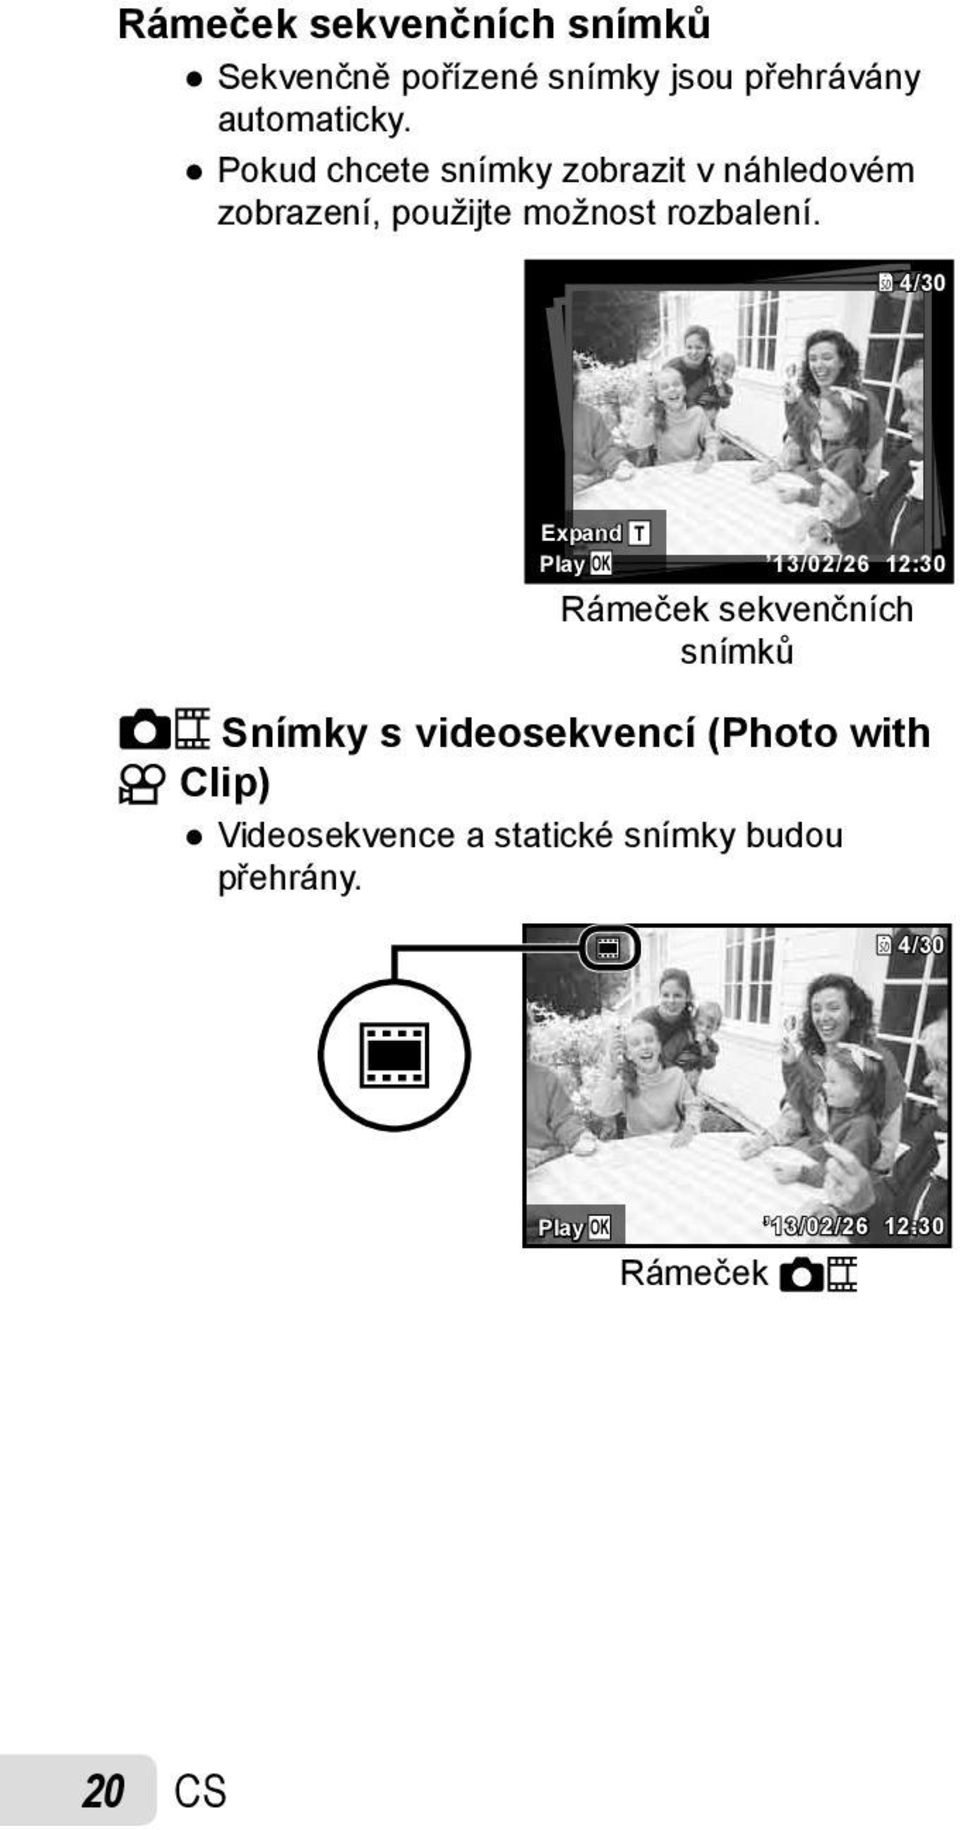 4/30 Expand Play OK T 13/02/26 12:30 Rámeček sekvenčních snímků Snímky s videosekvencí